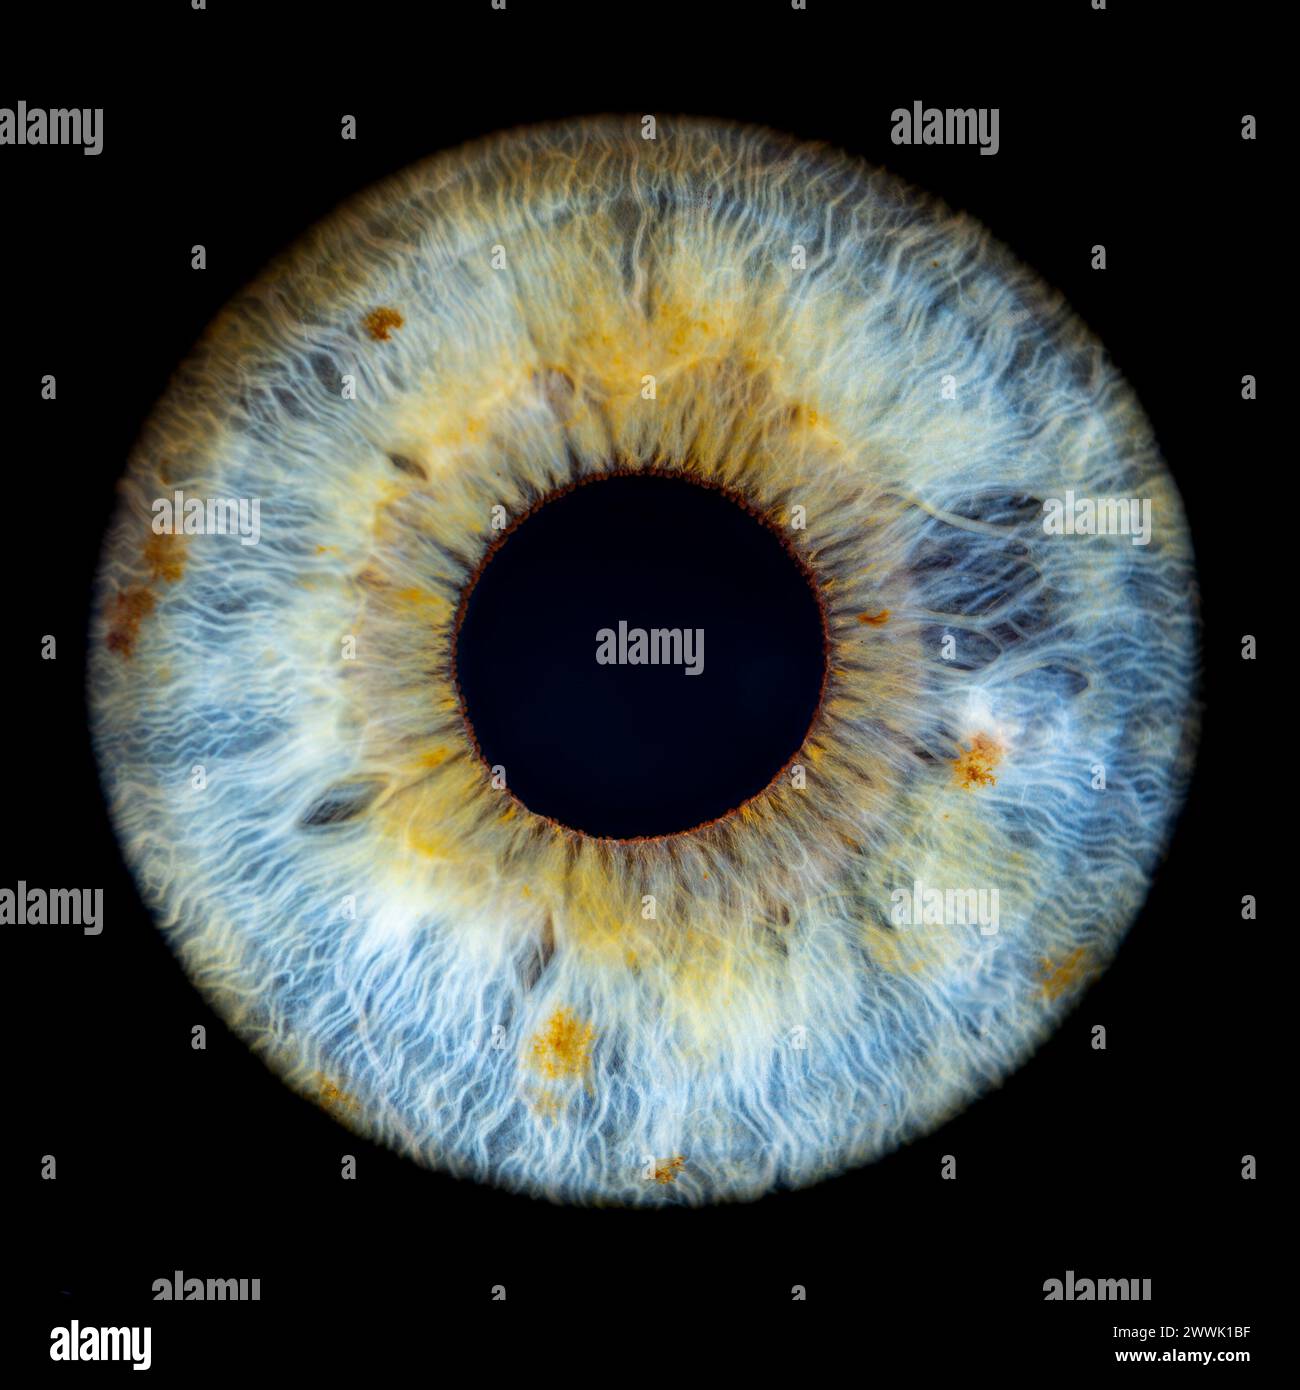 Description : photo macro de l'œil humain sur fond noir. Gros plan d'un œil bleu-vert féminin avec des taches jaunes. Anatomie structurelle. Iris Detai Banque D'Images